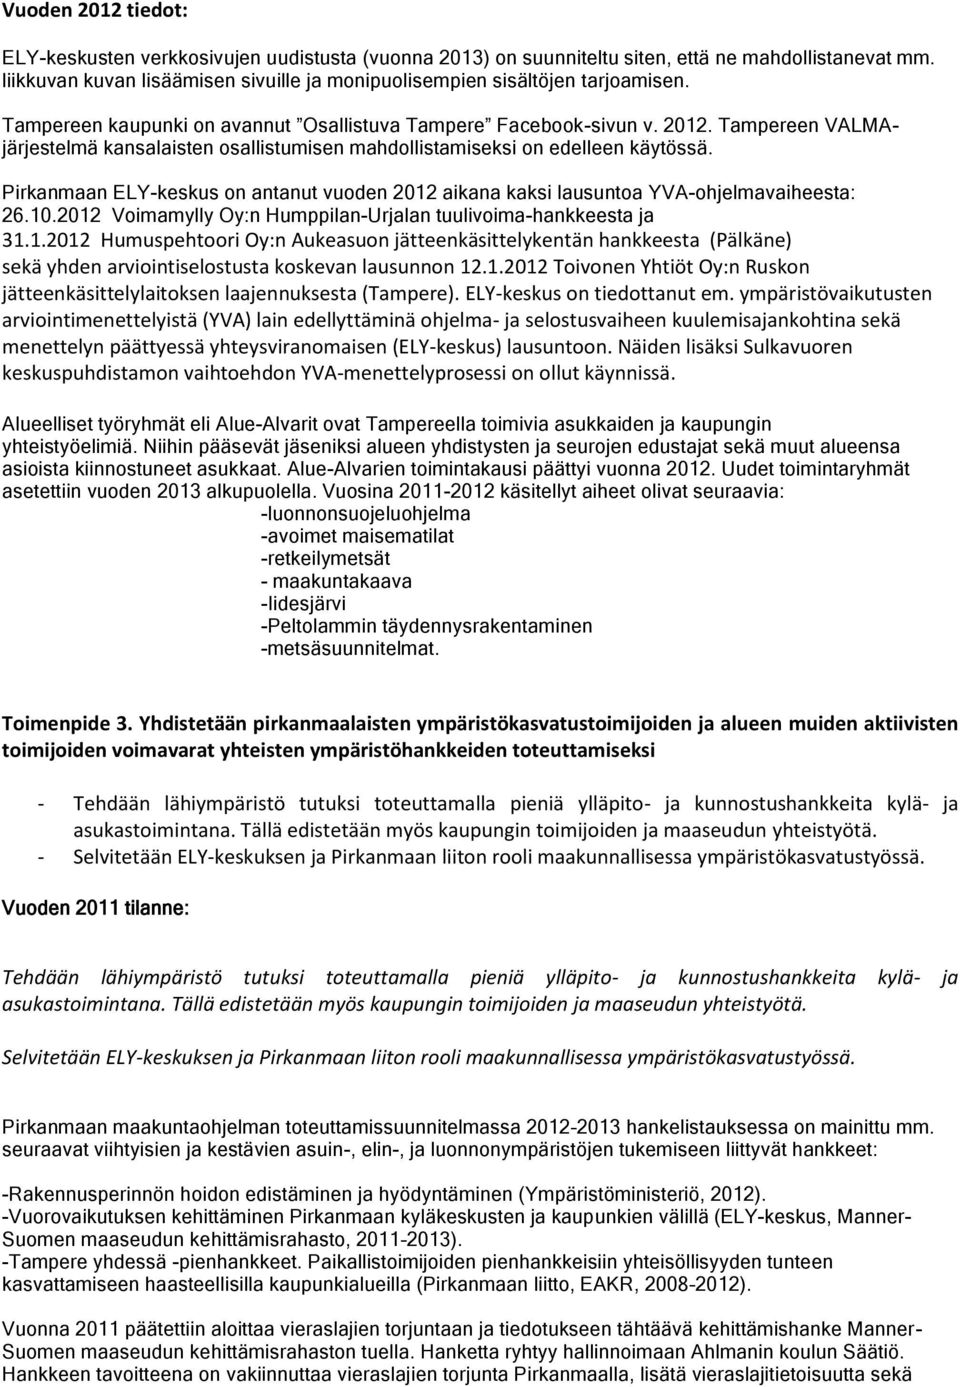 Tampereen VALMAjärjestelmä kansalaisten osallistumisen mahdollistamiseksi on edelleen käytössä. Pirkanmaan ELY-keskus on antanut vuoden 2012 aikana kaksi lausuntoa YVA-ohjelmavaiheesta: 26.10.